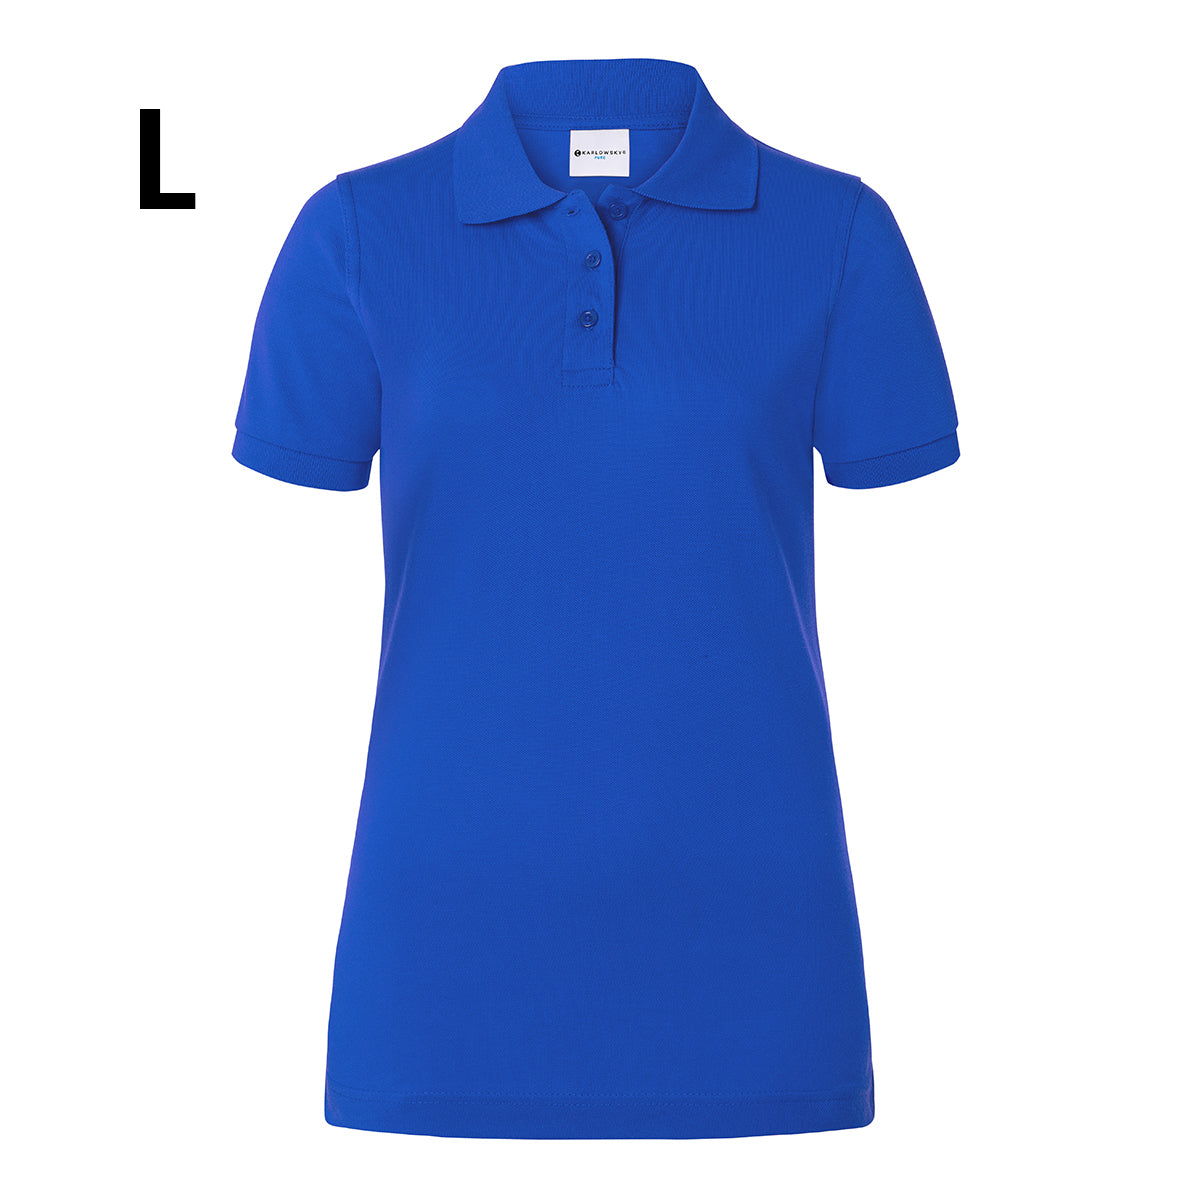 Karlowsky - Arbejdsbeklædning Basic Poloshirt til damer - Blå - Størrelse: L